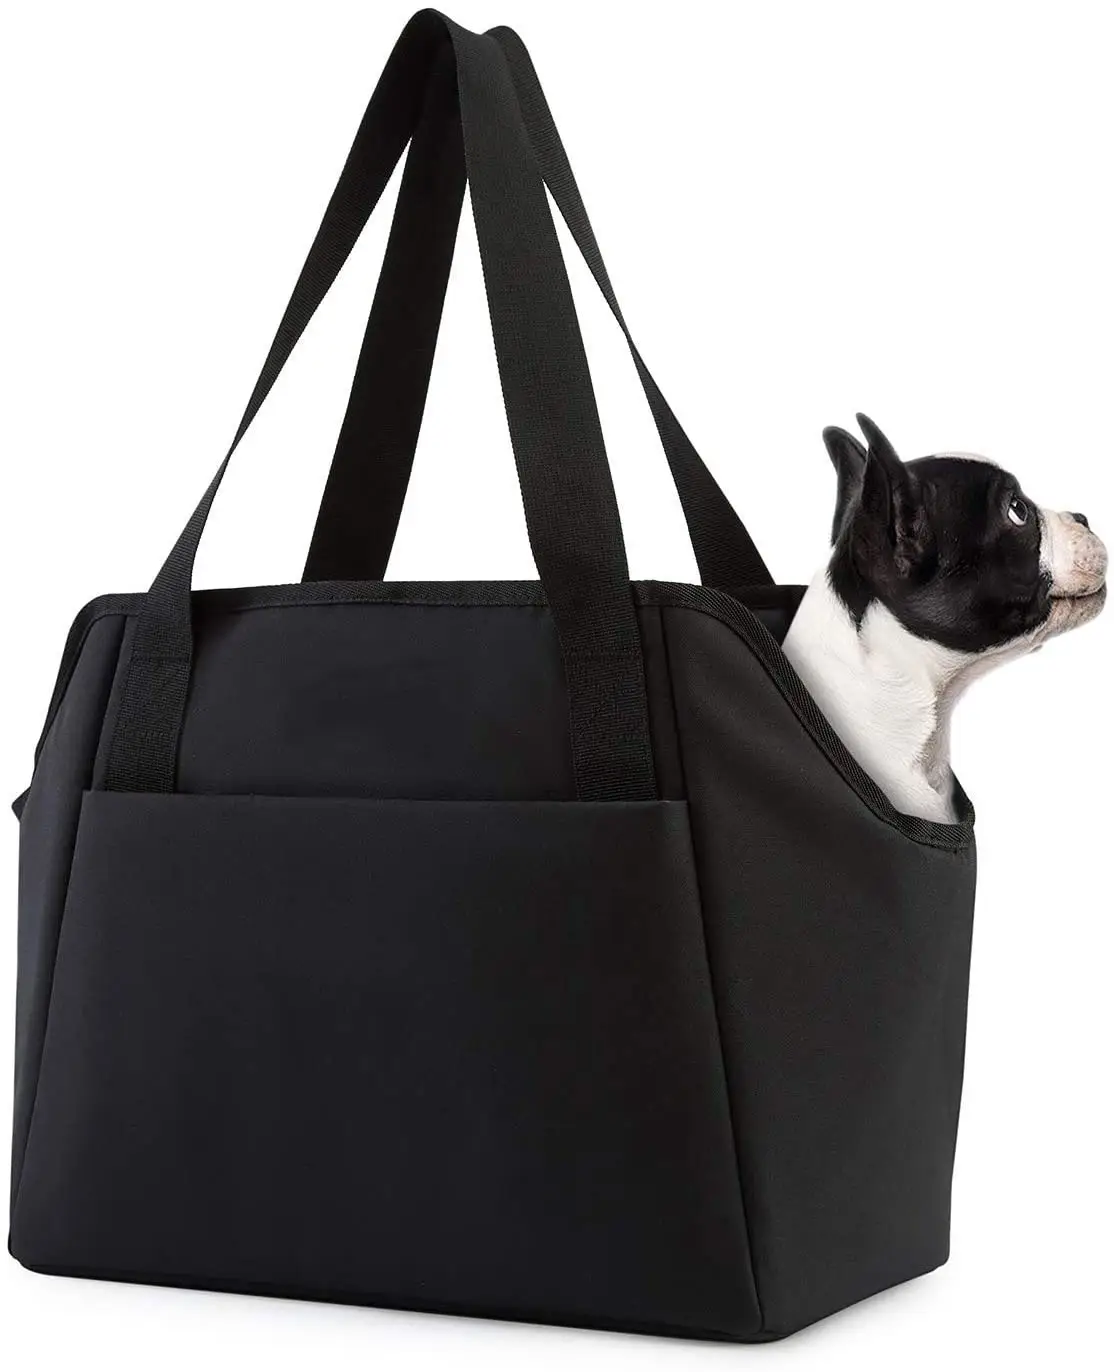 Sac à dos de transport pour petit chien, fourre-tout avec poches, sur le côté, souple, pour sécurité réglable, polyvalent, nouvelle collection